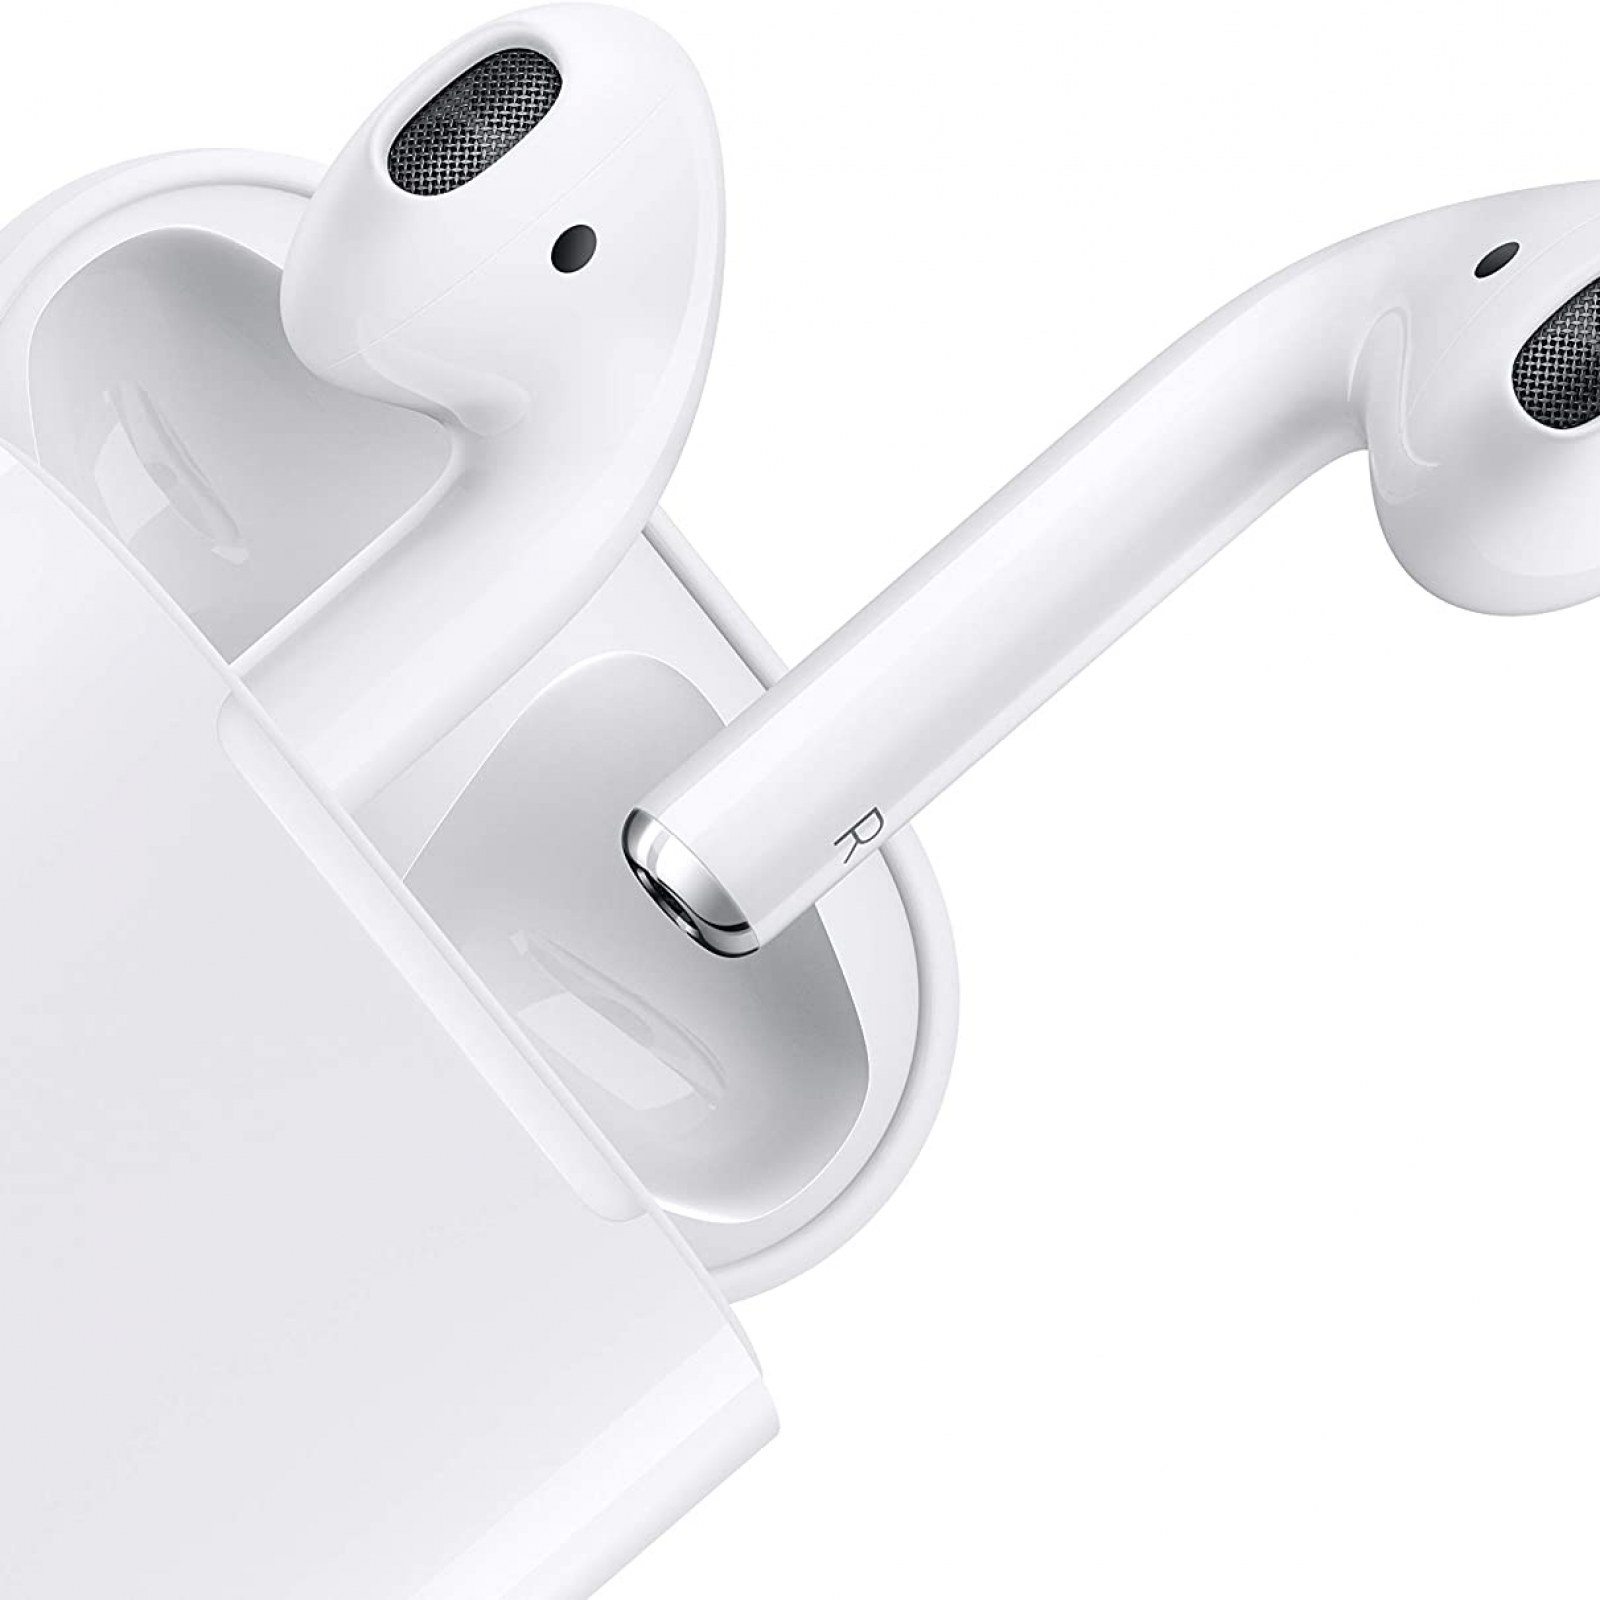 afbreken brandwonden Roei uit 6 of the Best Headphones and Earbuds for your iPhone, iPad and Mac